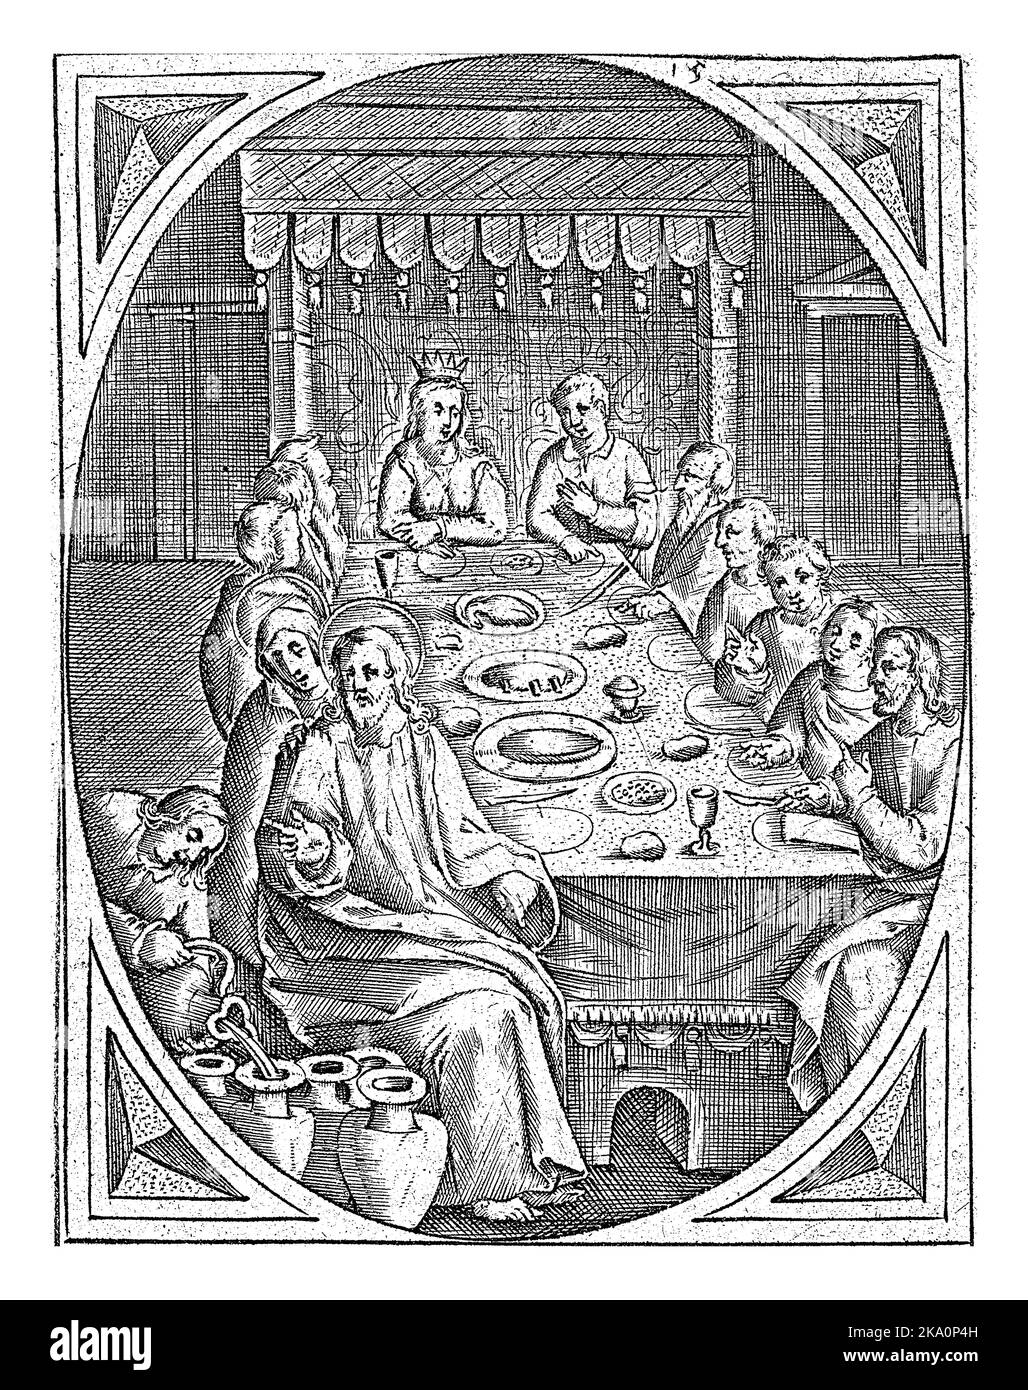 Heiratsmahl in Cana, Joannes Galle, c. 1626 - c. 1676 die Hochzeitsgäste sitzen am Tisch. Christus sitzt vorne links und segnet die Gefäße o Stockfoto